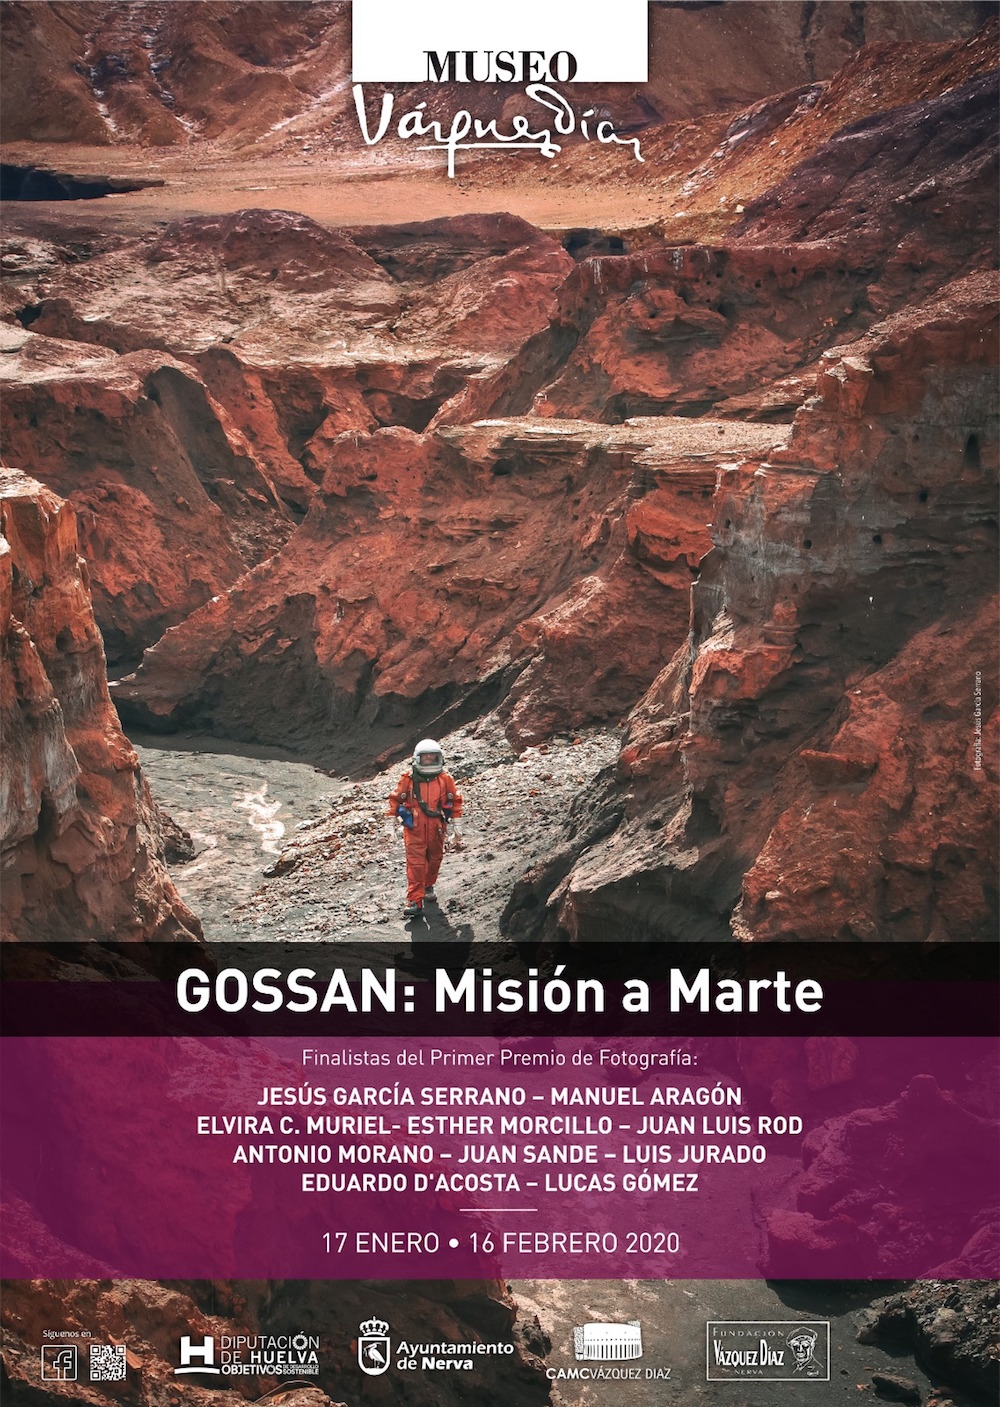 Gossan: Misión a Marte